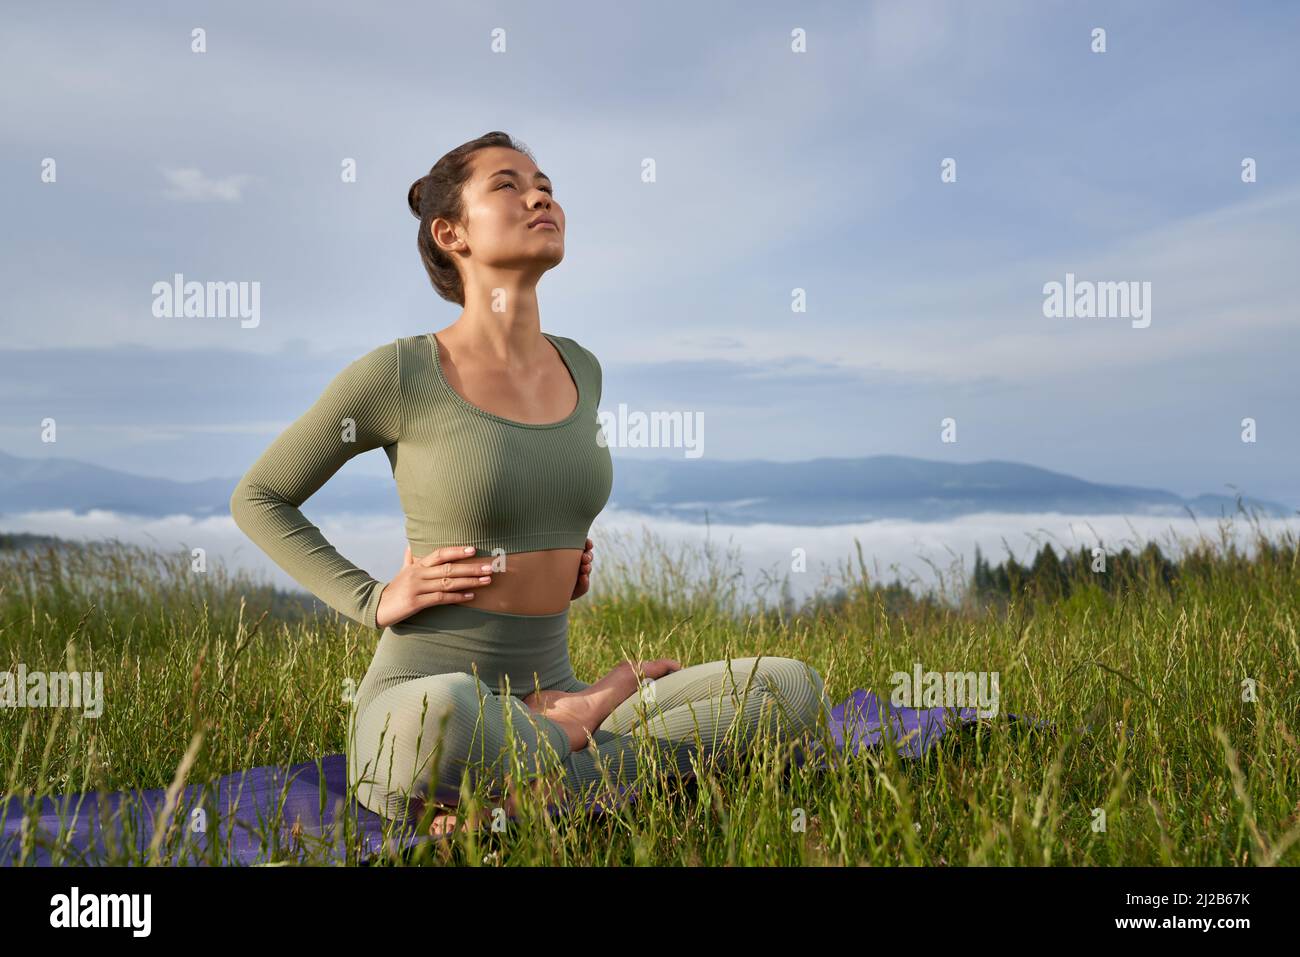 Fitness junge Frau in Sportkleidung genießen Harmonie zwischen grünen Sommer Natur. Aktive Dame, die auf einer Yogamatte sitzt und Übungen für den Körper macht. Stockfoto